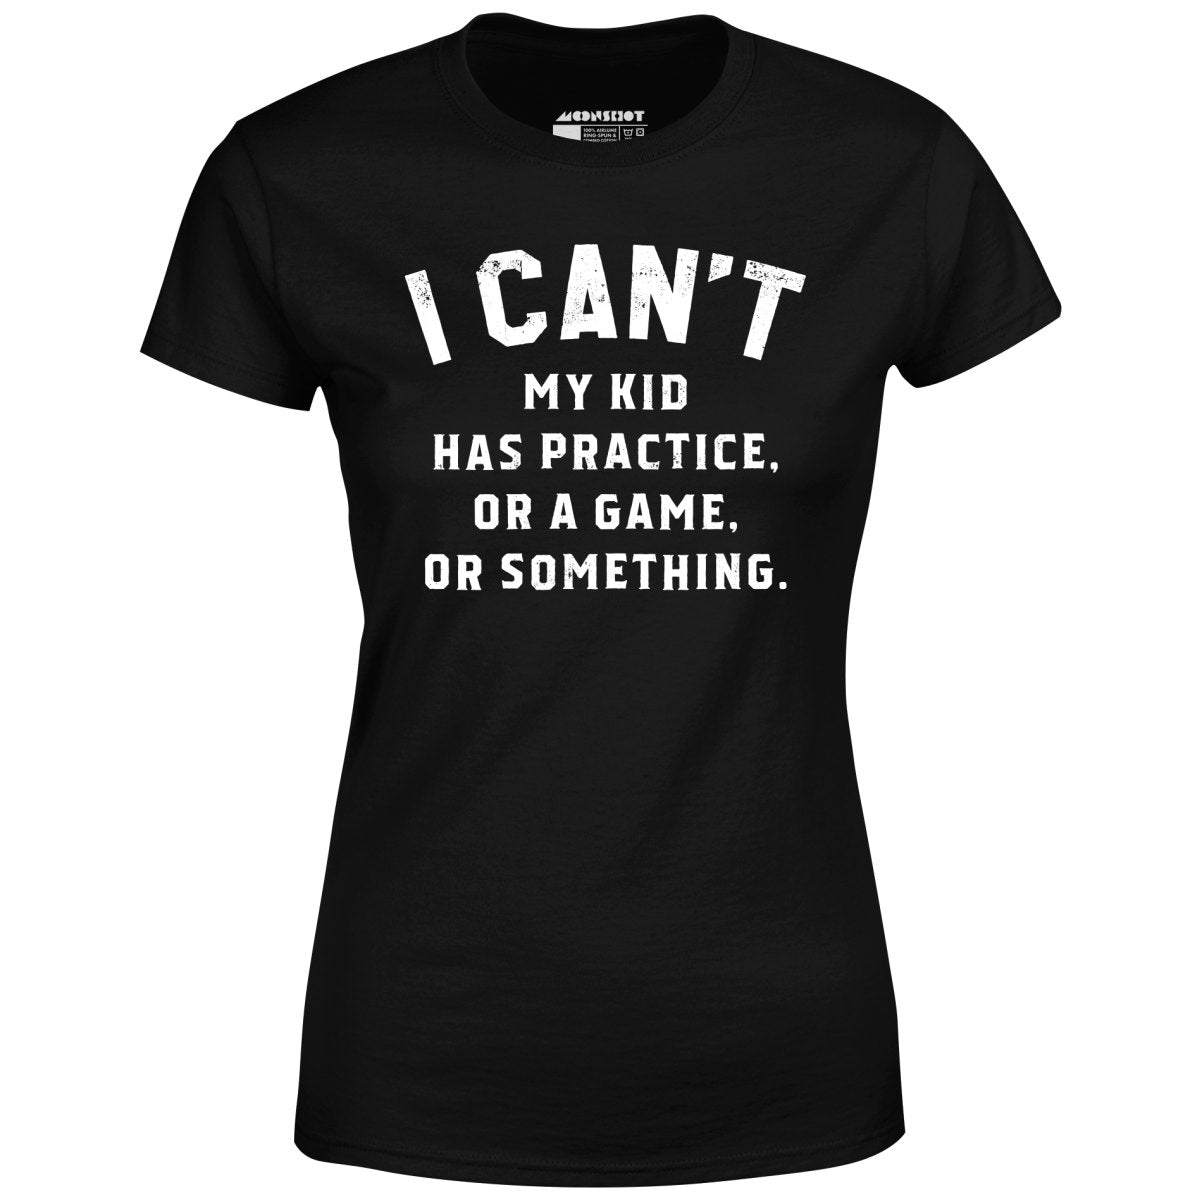 I Can't - Women's T-Shirt